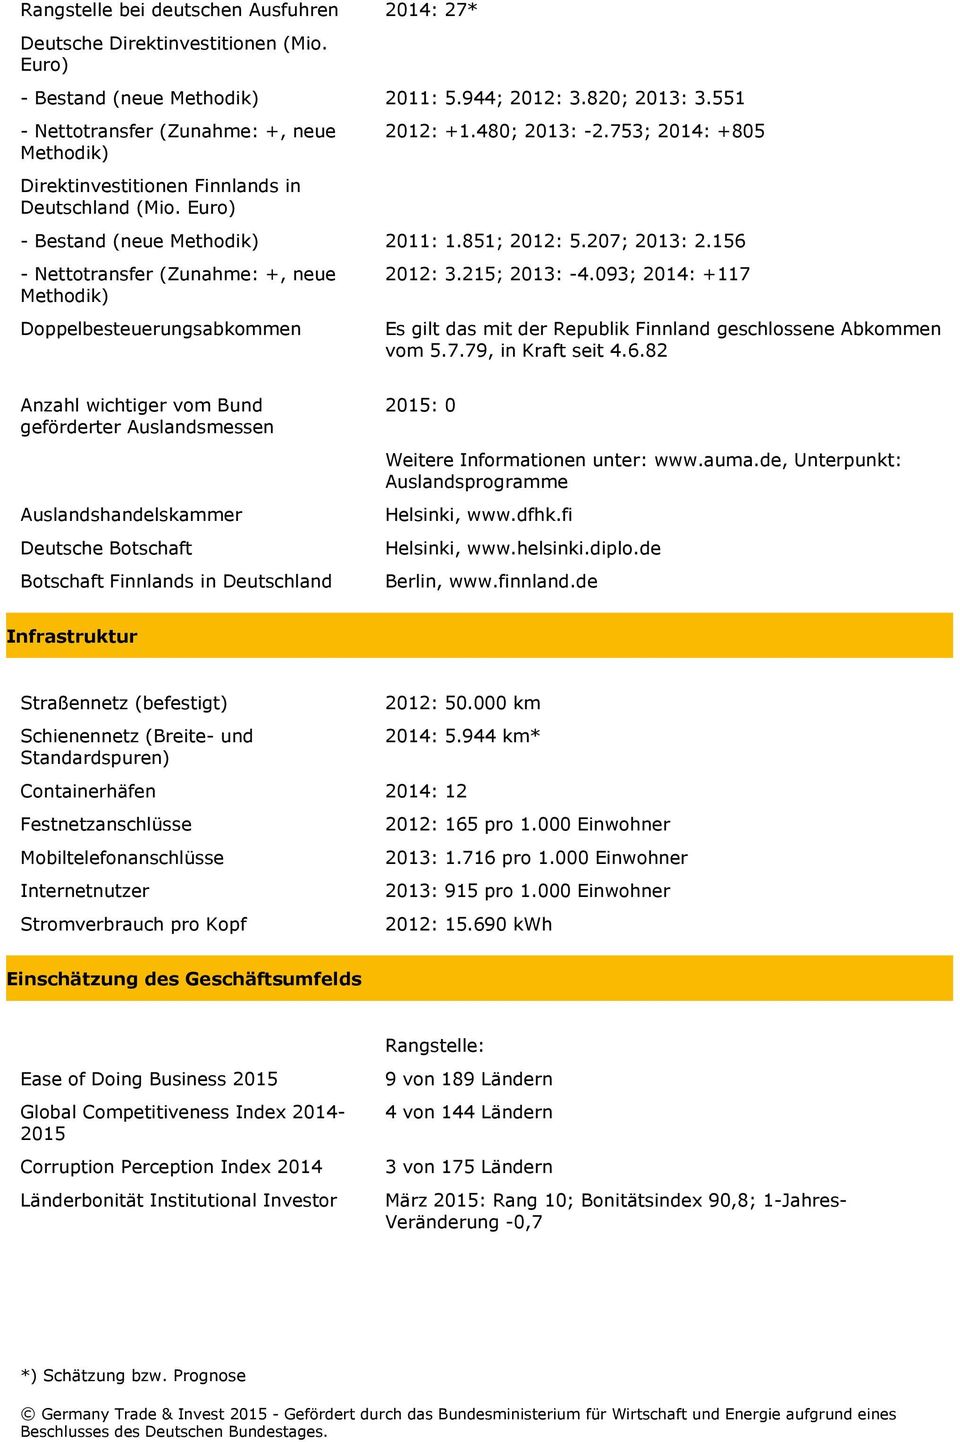 207; 2013: 2.156 - Nettotransfer (Zunahme: +, neue Methodik) Doppelbesteuerungsabkommen 2012: 3.215; 2013: -4.093; 2014: +117 Es gilt das mit der Republik Finnland geschlossene Abkommen vom 5.7.79, in Kraft seit 4.